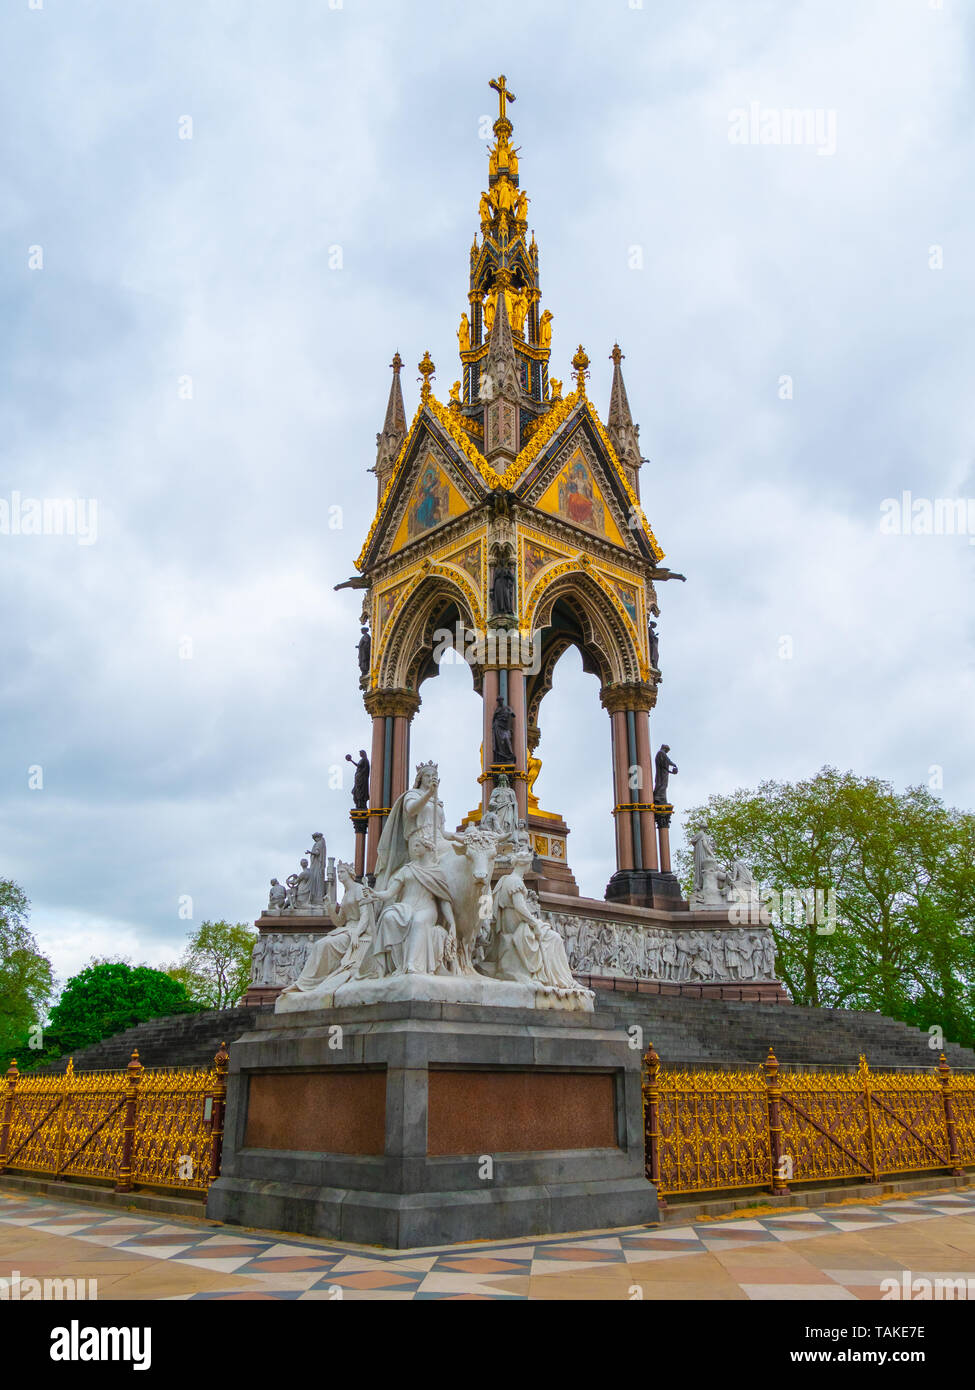 European themed sculptures at the Albert Memorial in London, UK, at Kensington Gardens, in memory of Prince Albert. Prince Albert Memorial, Gothic Mem Stock Photo